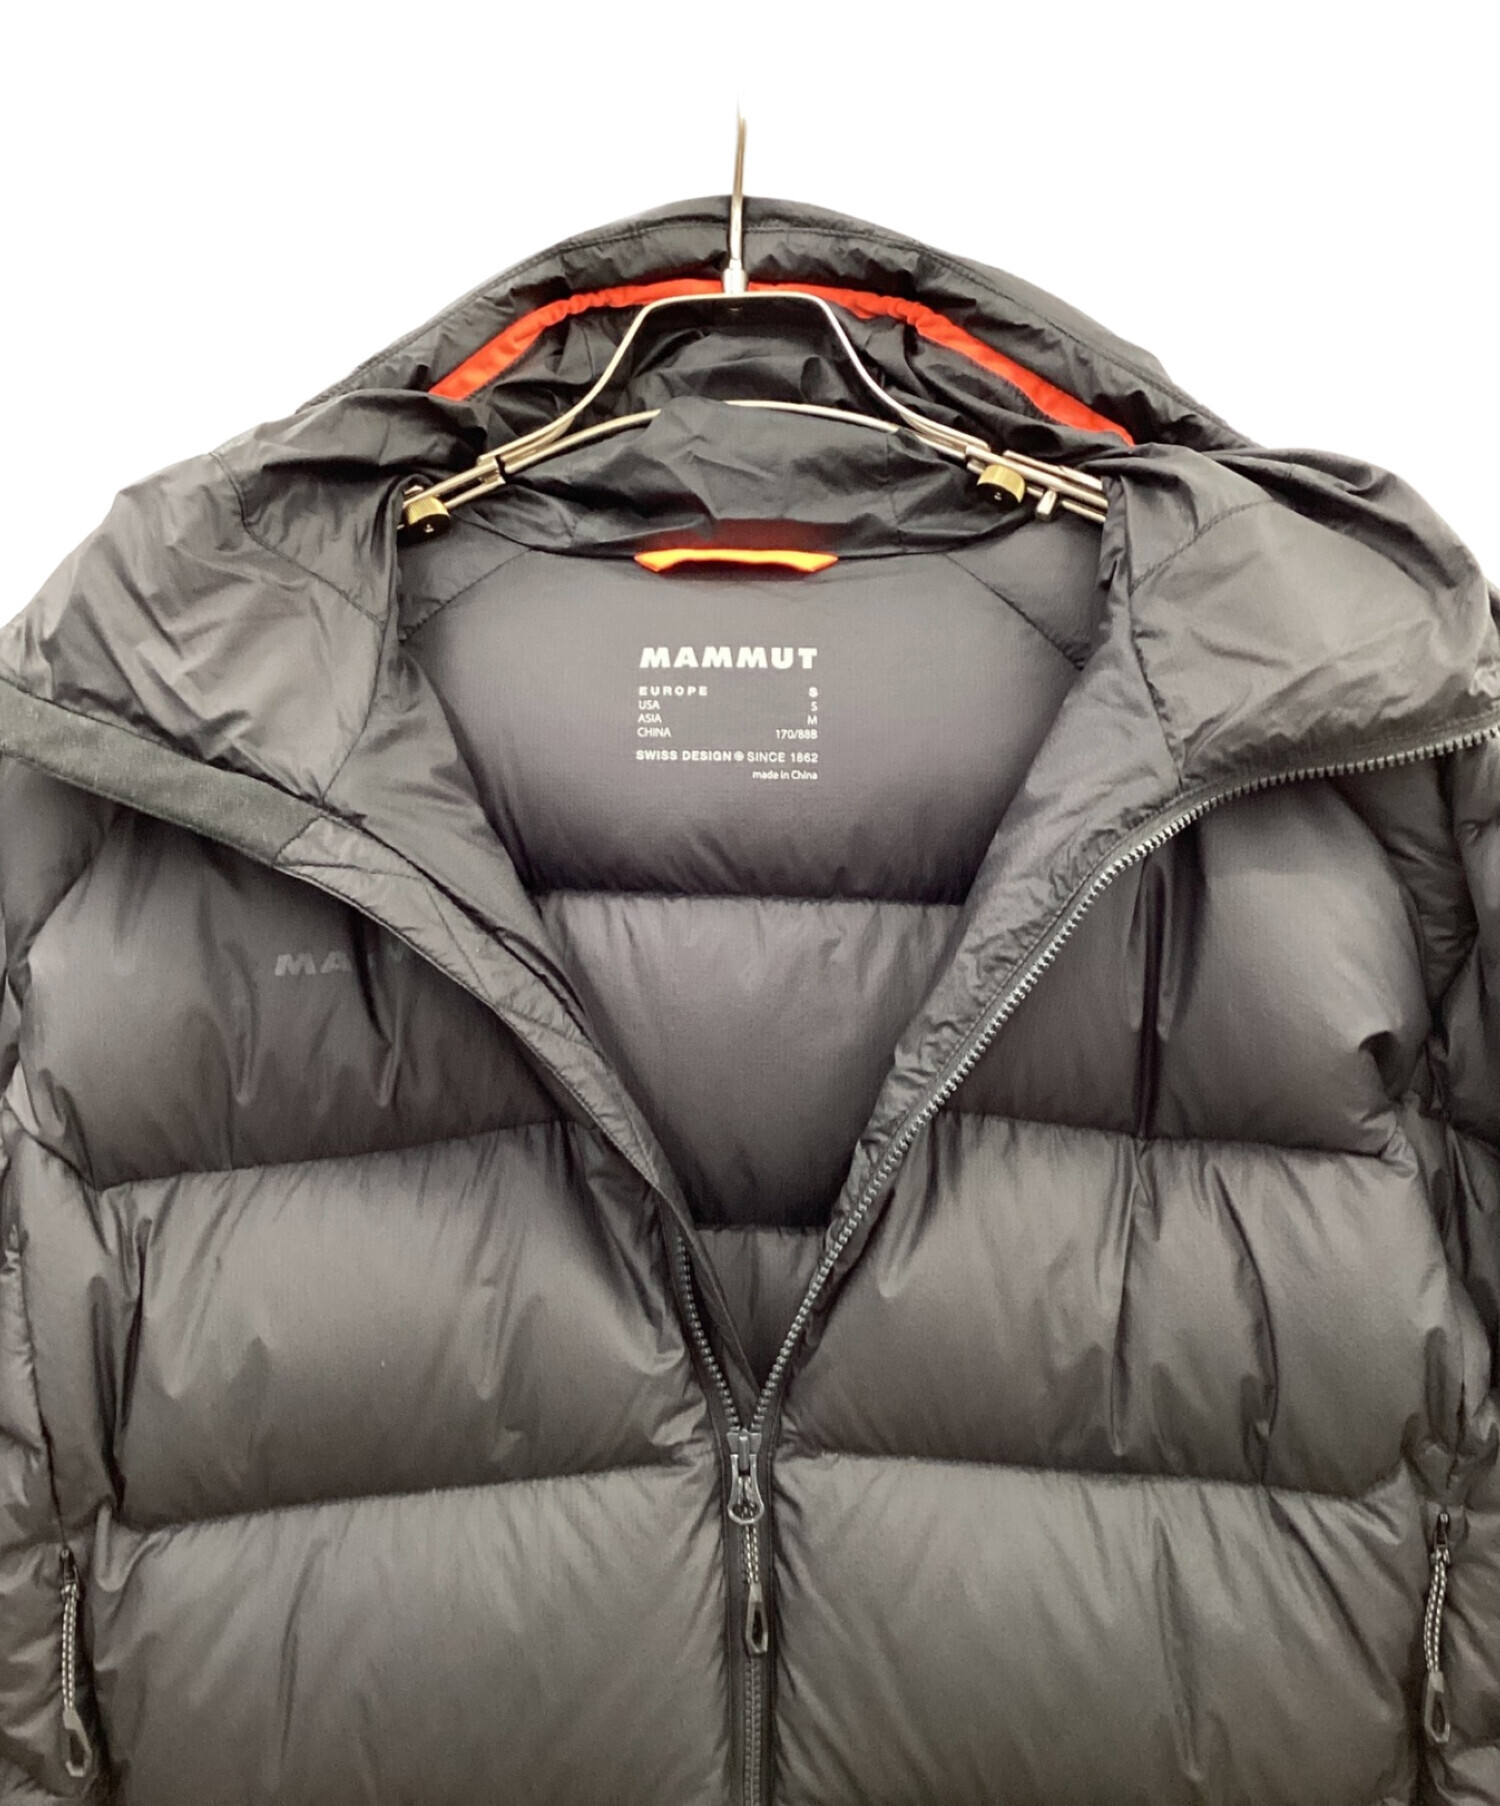 MAMMUT (マムート) メロンインフーデッドジャケット ブラック サイズ:M